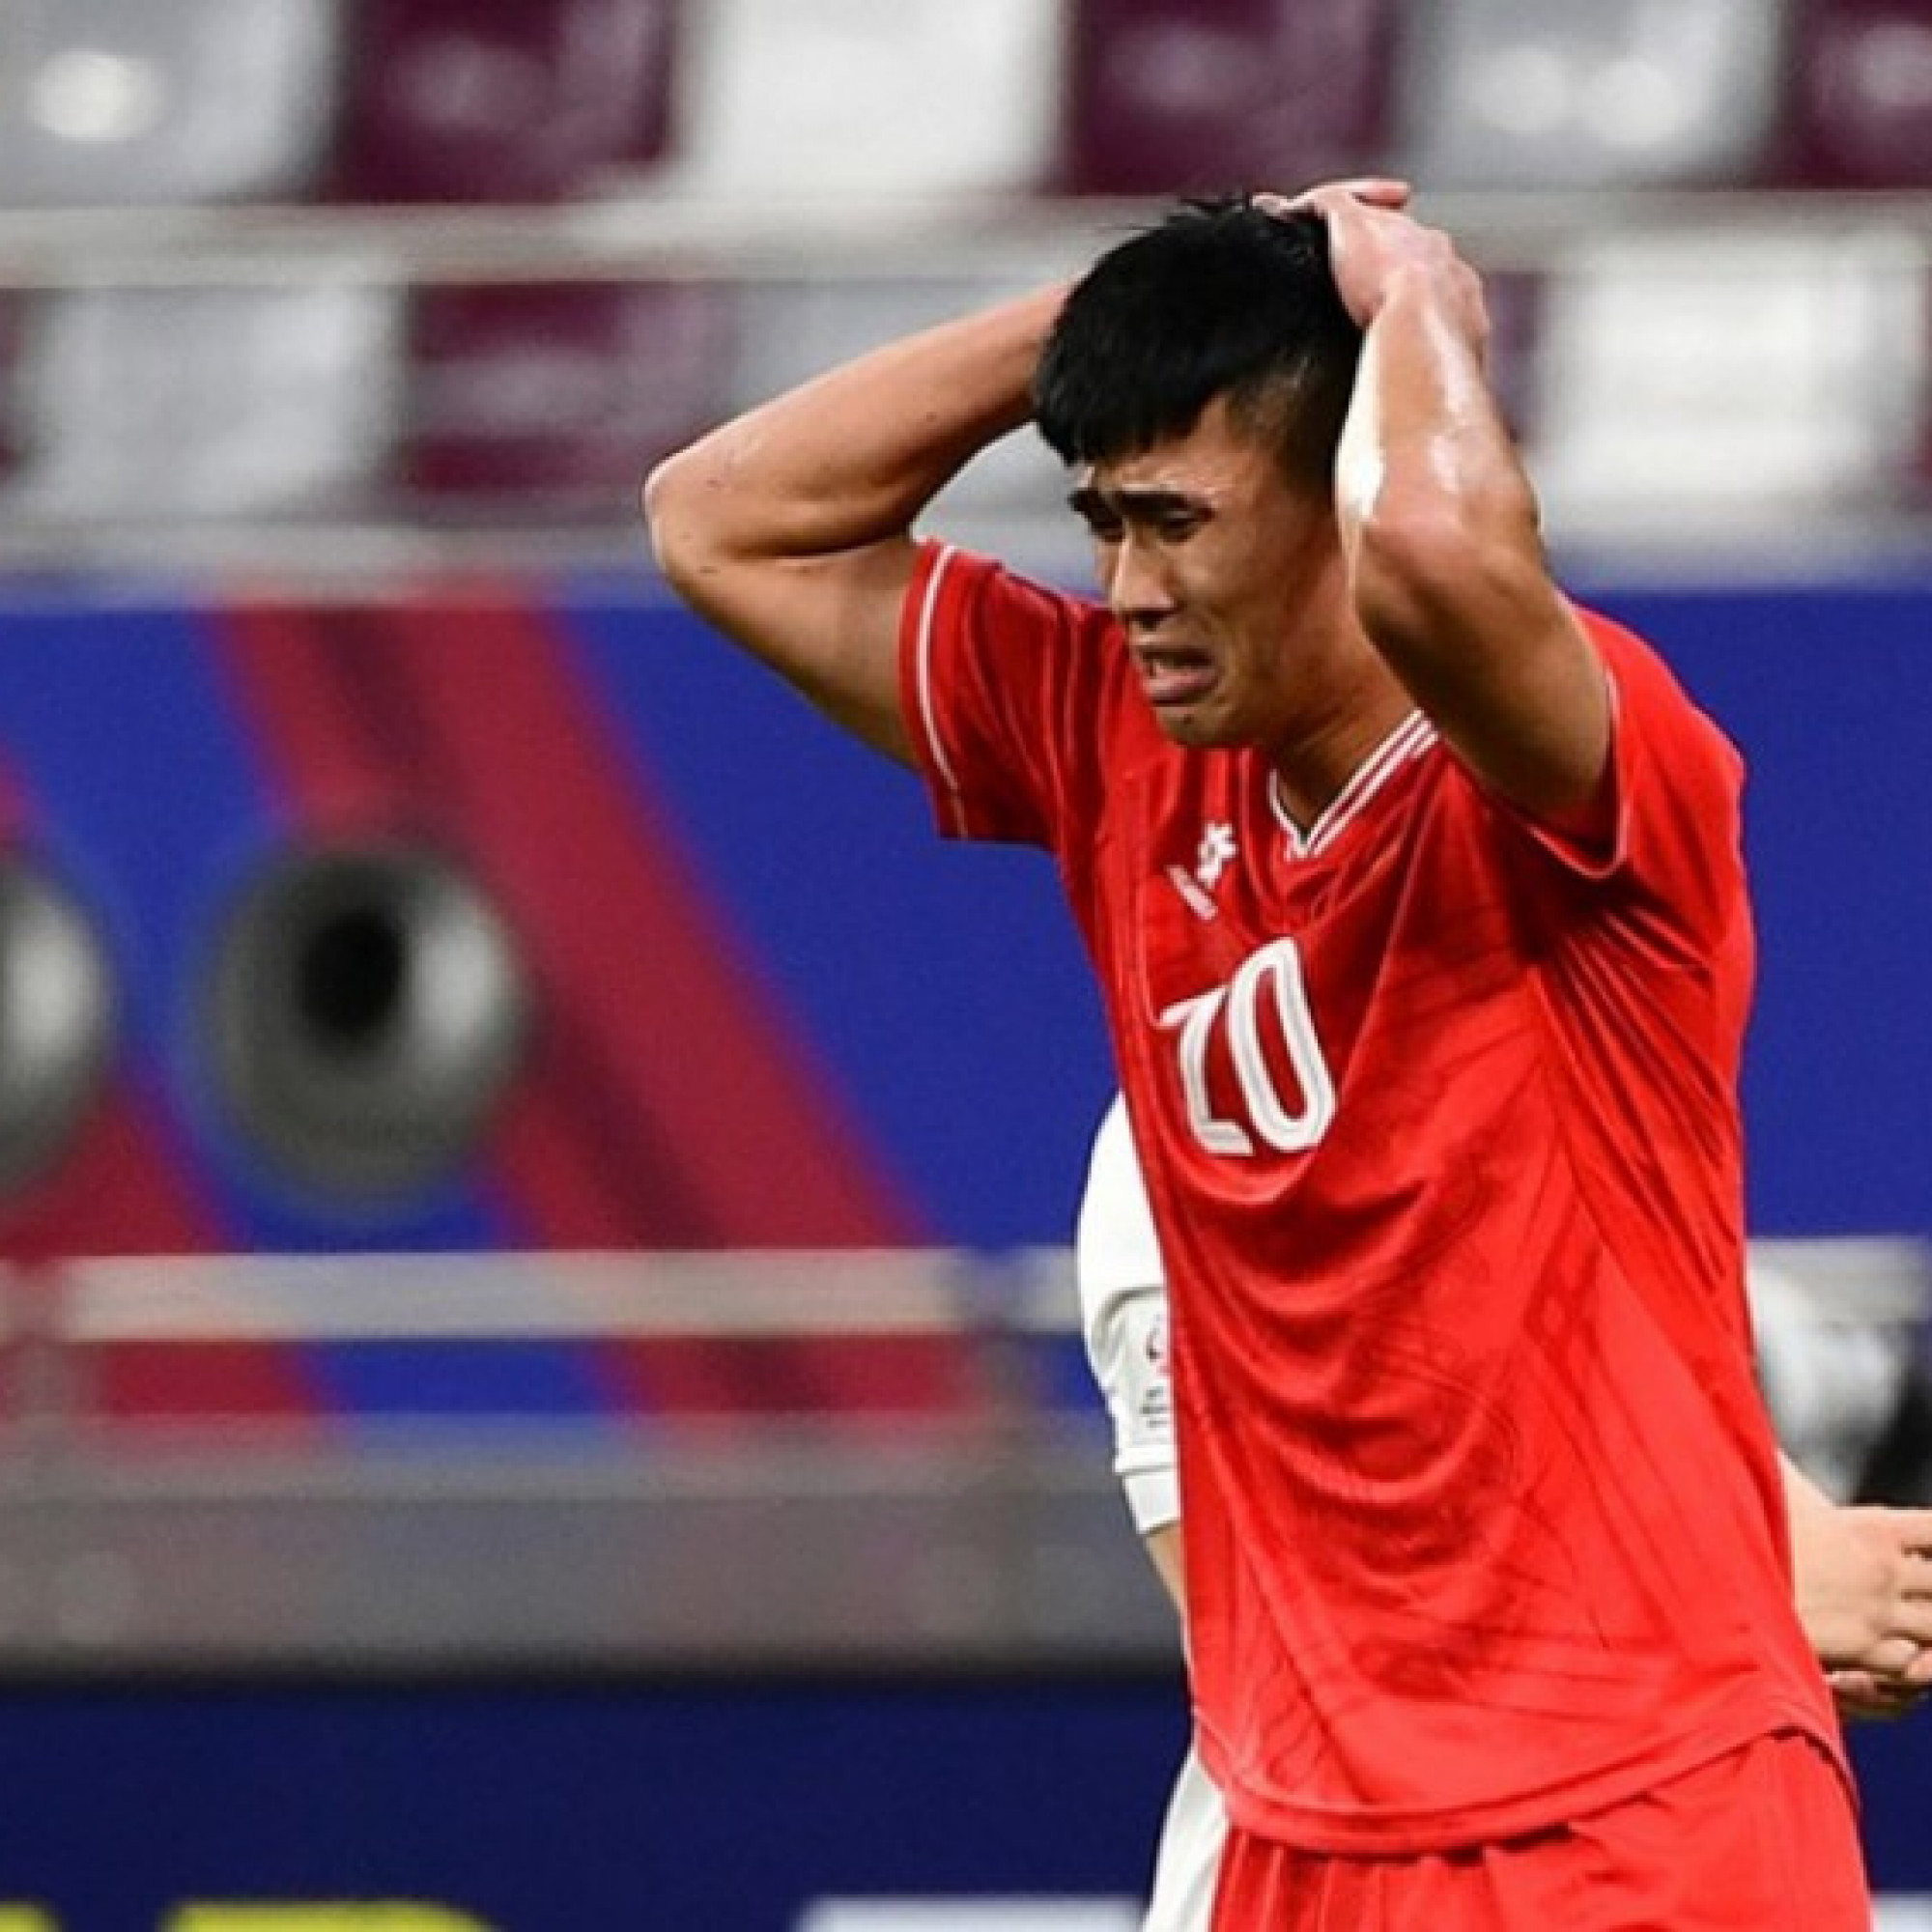  - Tuyển thủ U23 Ngọc Thắng bị điều tra vì ma túy, từng bị thẻ đỏ ở U23 châu Á